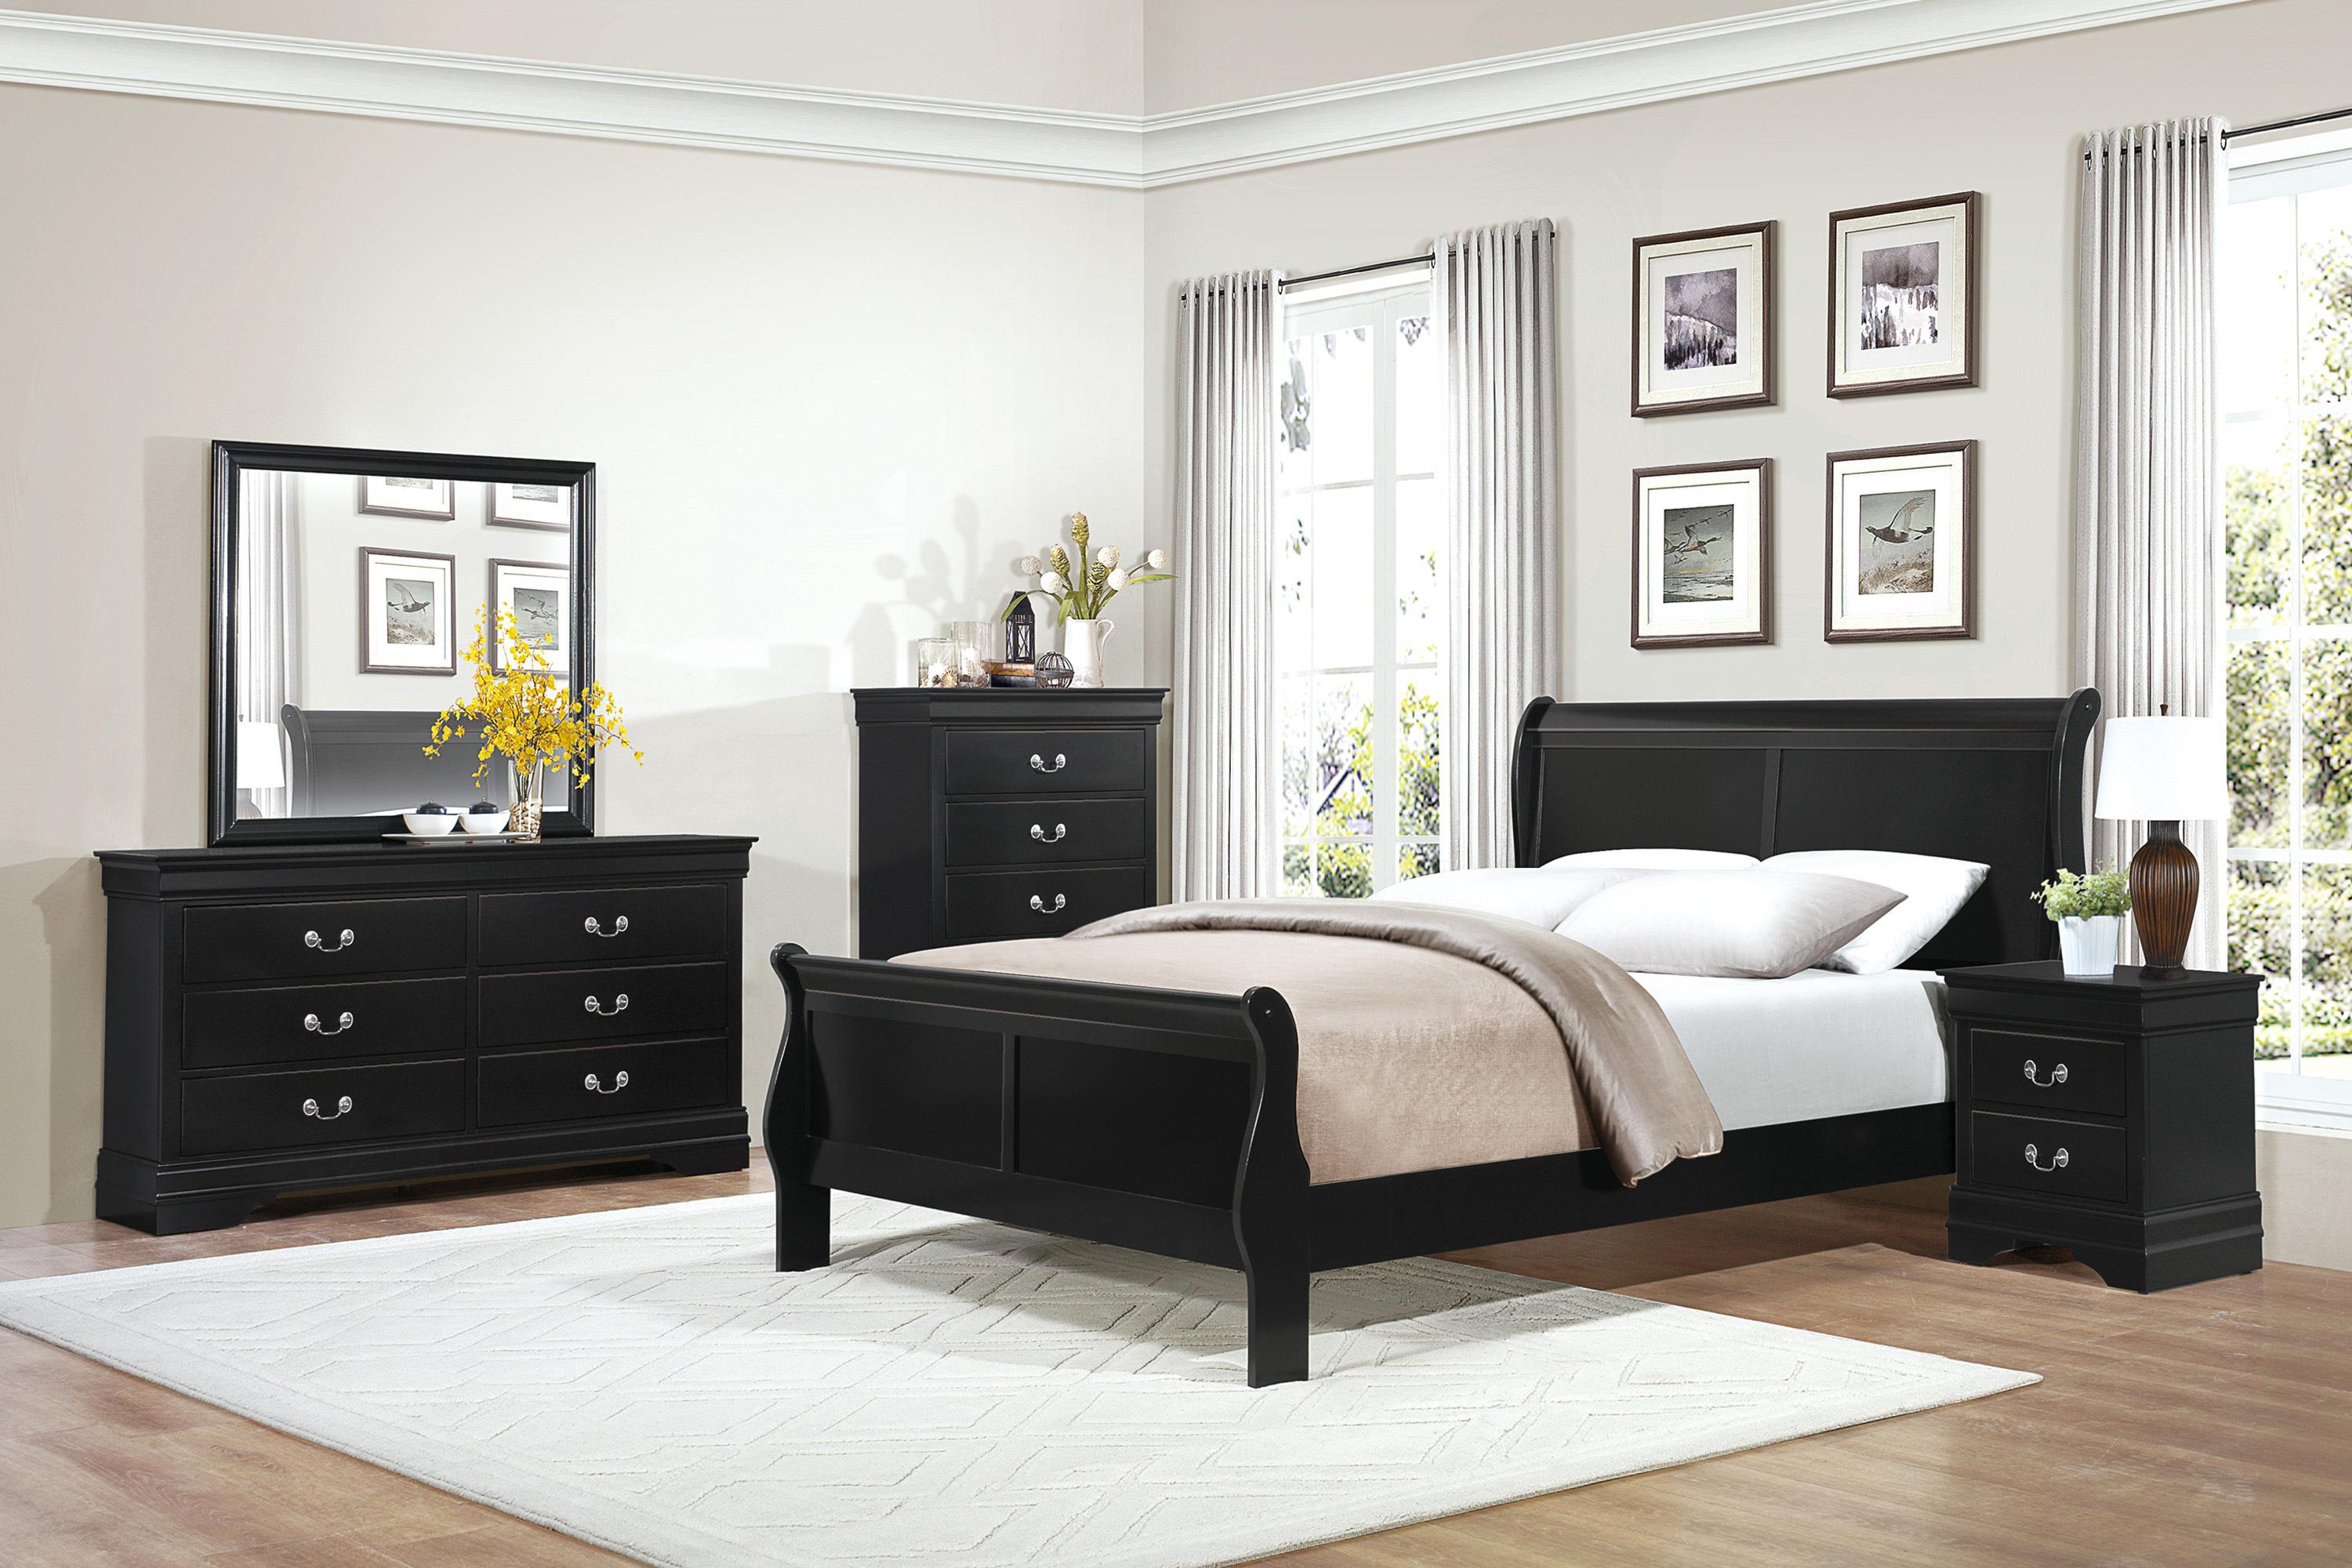 

    
Traditional Black Wood King Bedroom Set 6pcs Homelegance 2147KBK-1EK* Mayville
